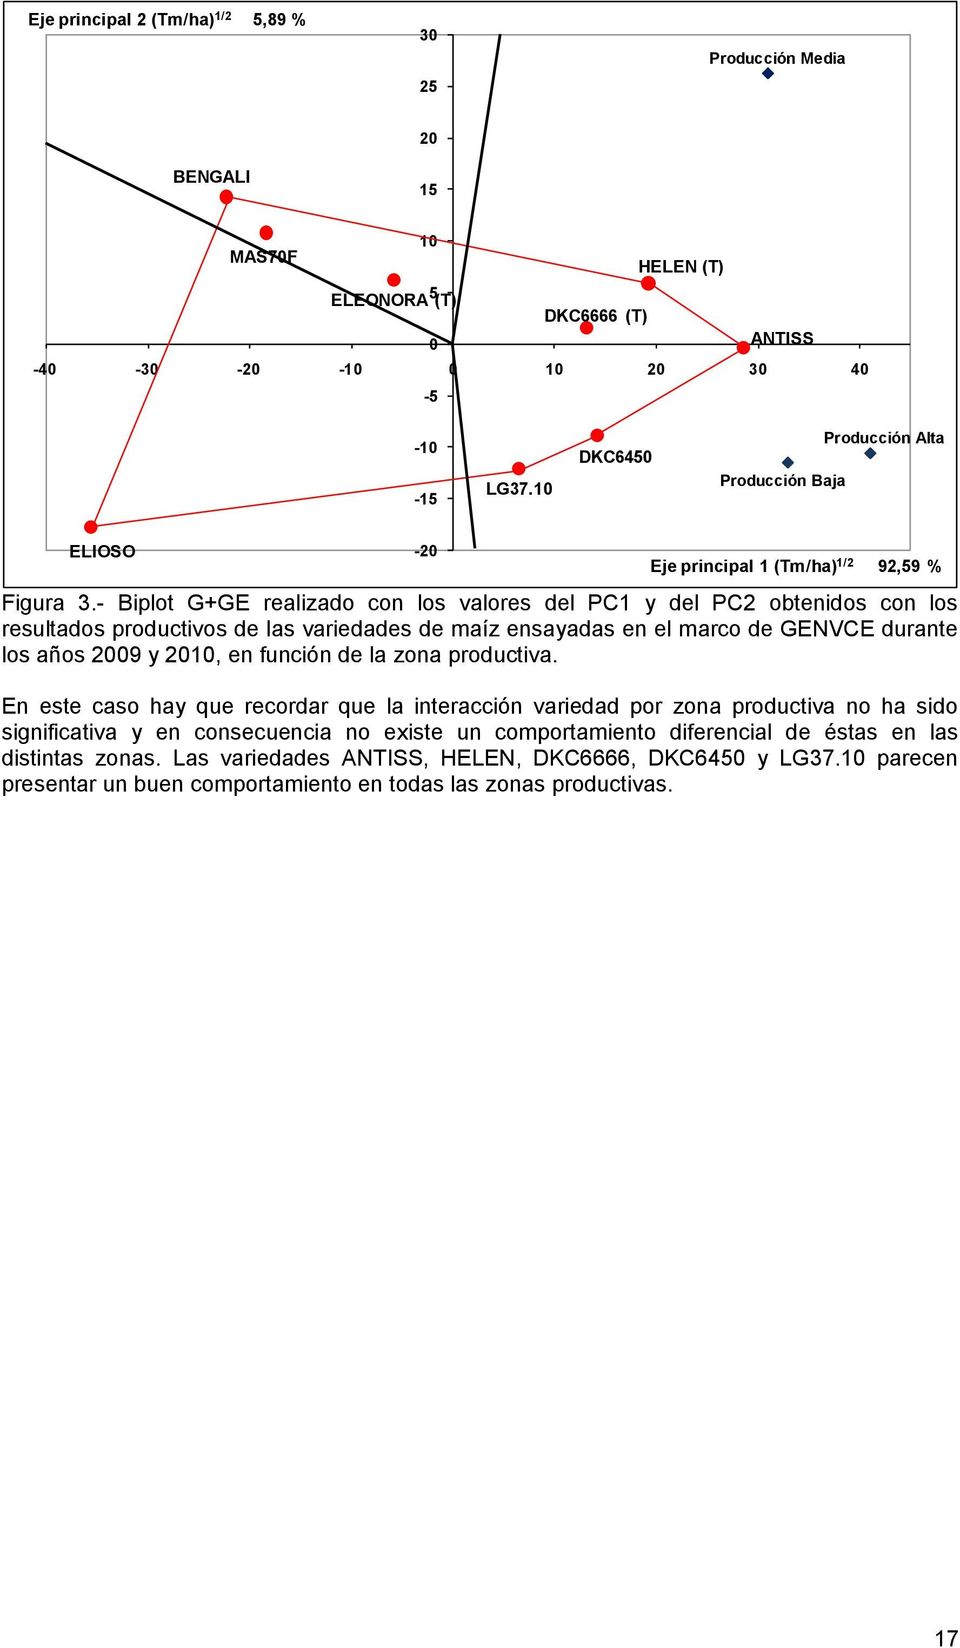 - Biplot G+GE realizado con los valores del PC1 y del PC2 obtenidos con los resultados productivos de las variedades de maíz ensayadas en el marco de GENVCE durante los años 2009 y 2010, en función